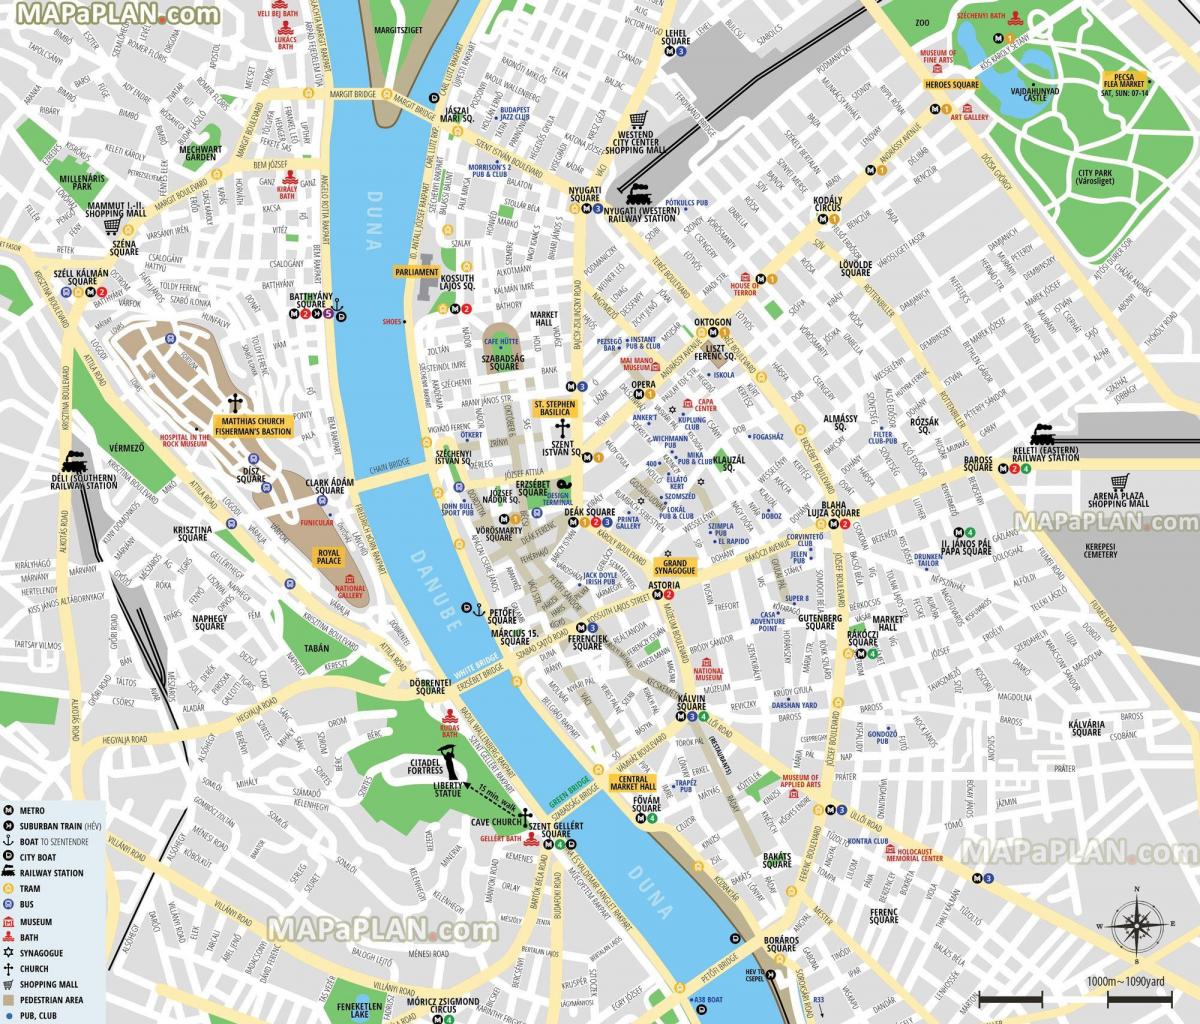 Plan du centre ville de Budapest